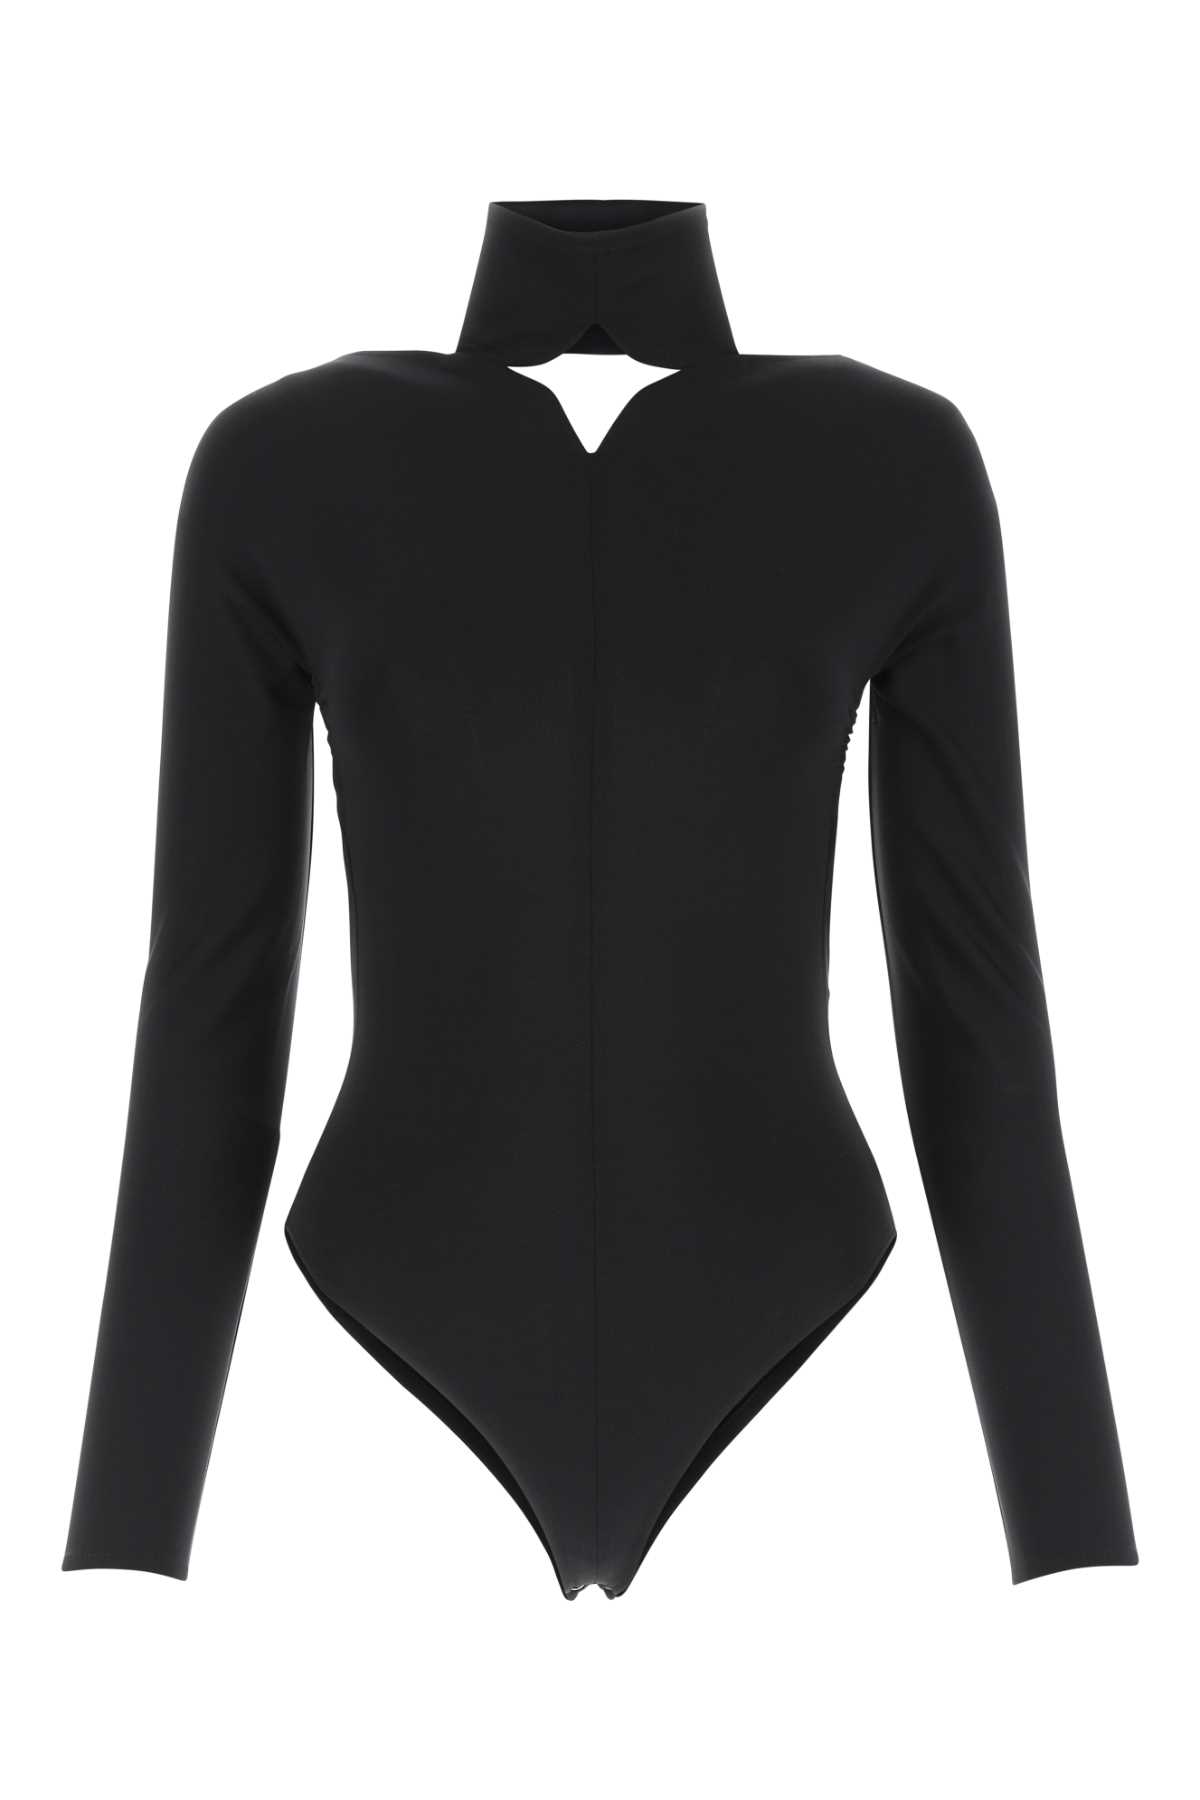 Courrèges Black Stretch Viscose Blend Bodysuit